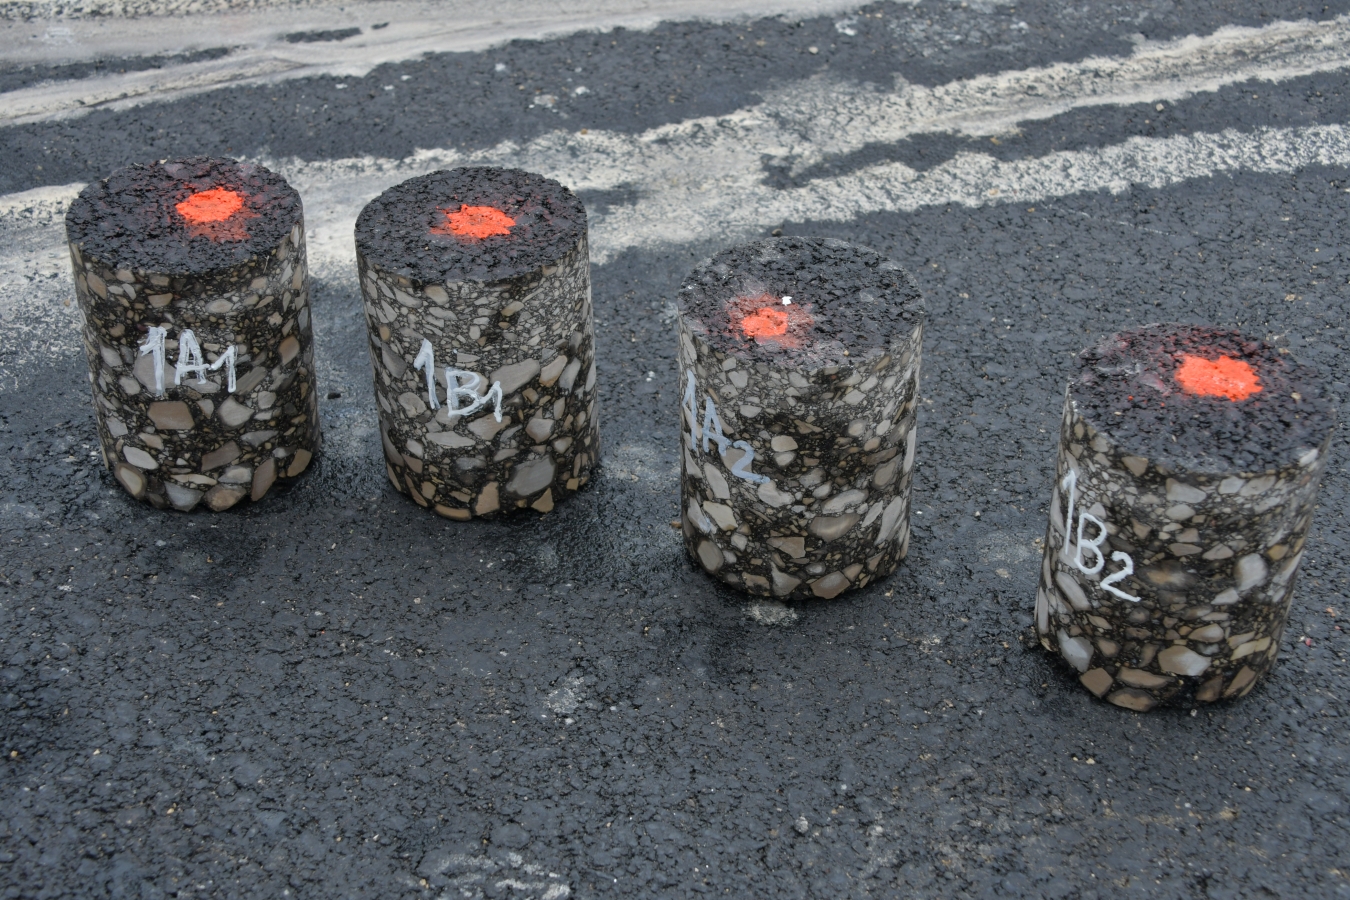 3.jūnijā veic asfaltbetona urbumus Zīlānu ielas posmā